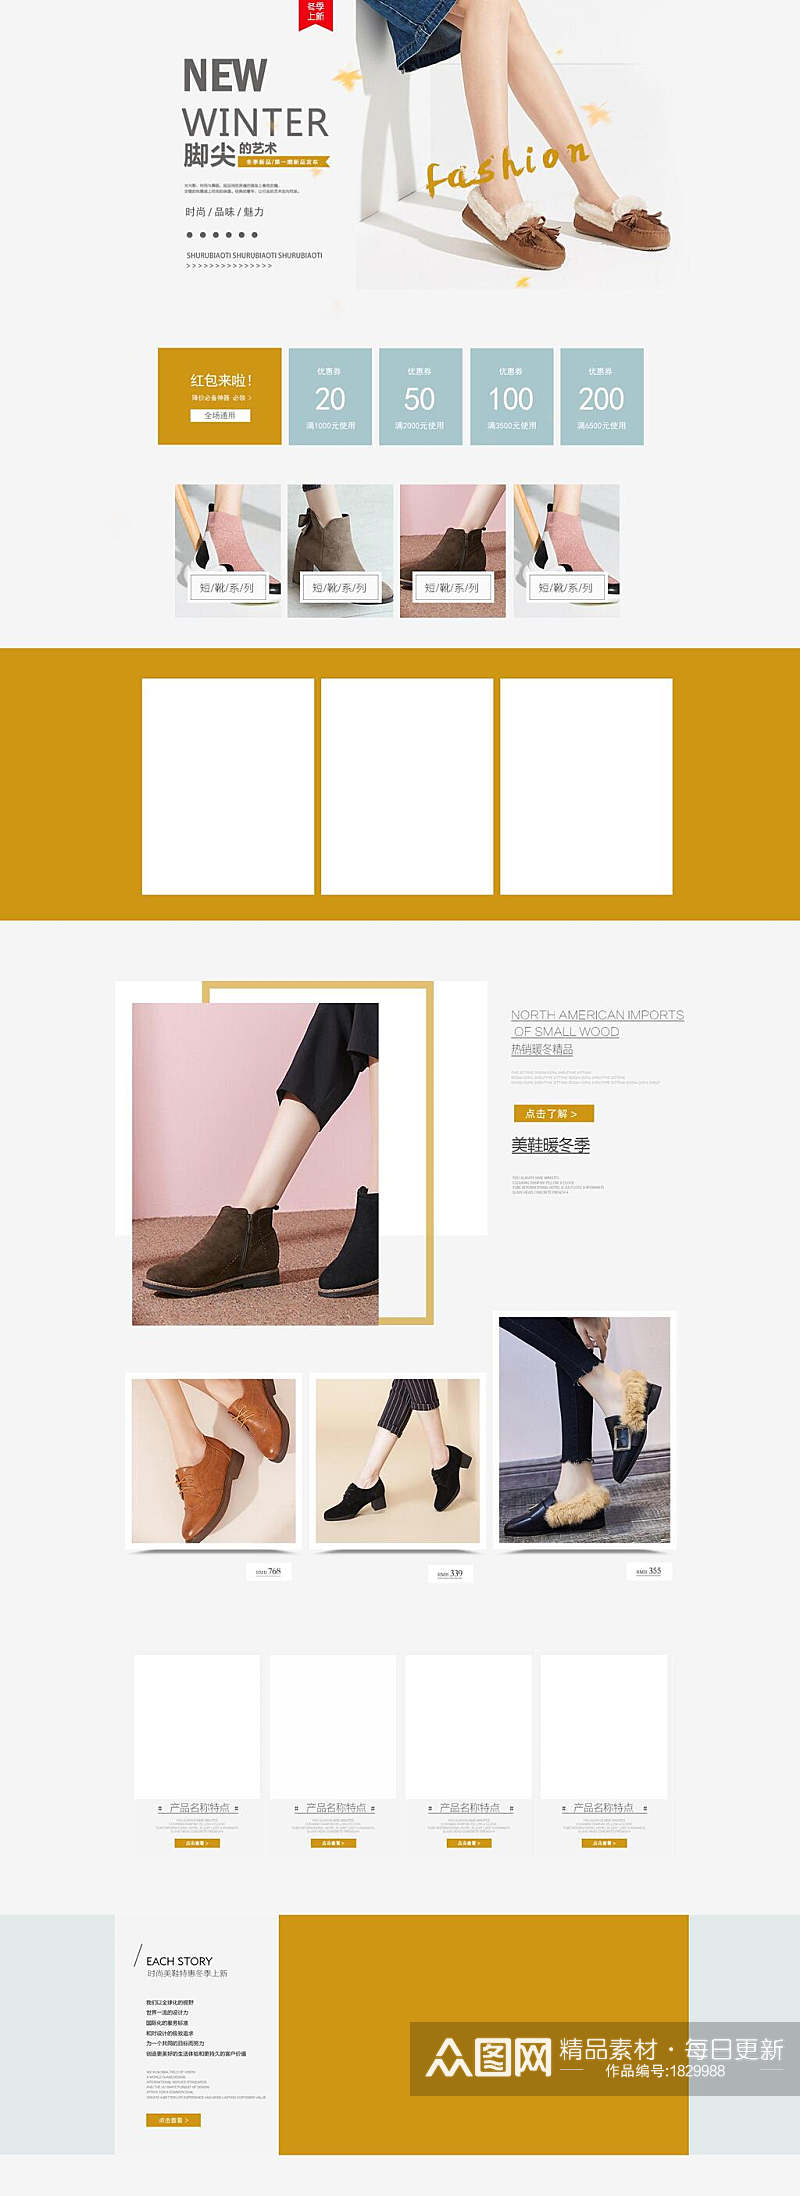 极简冬季新品女鞋电商详情页面设计素材